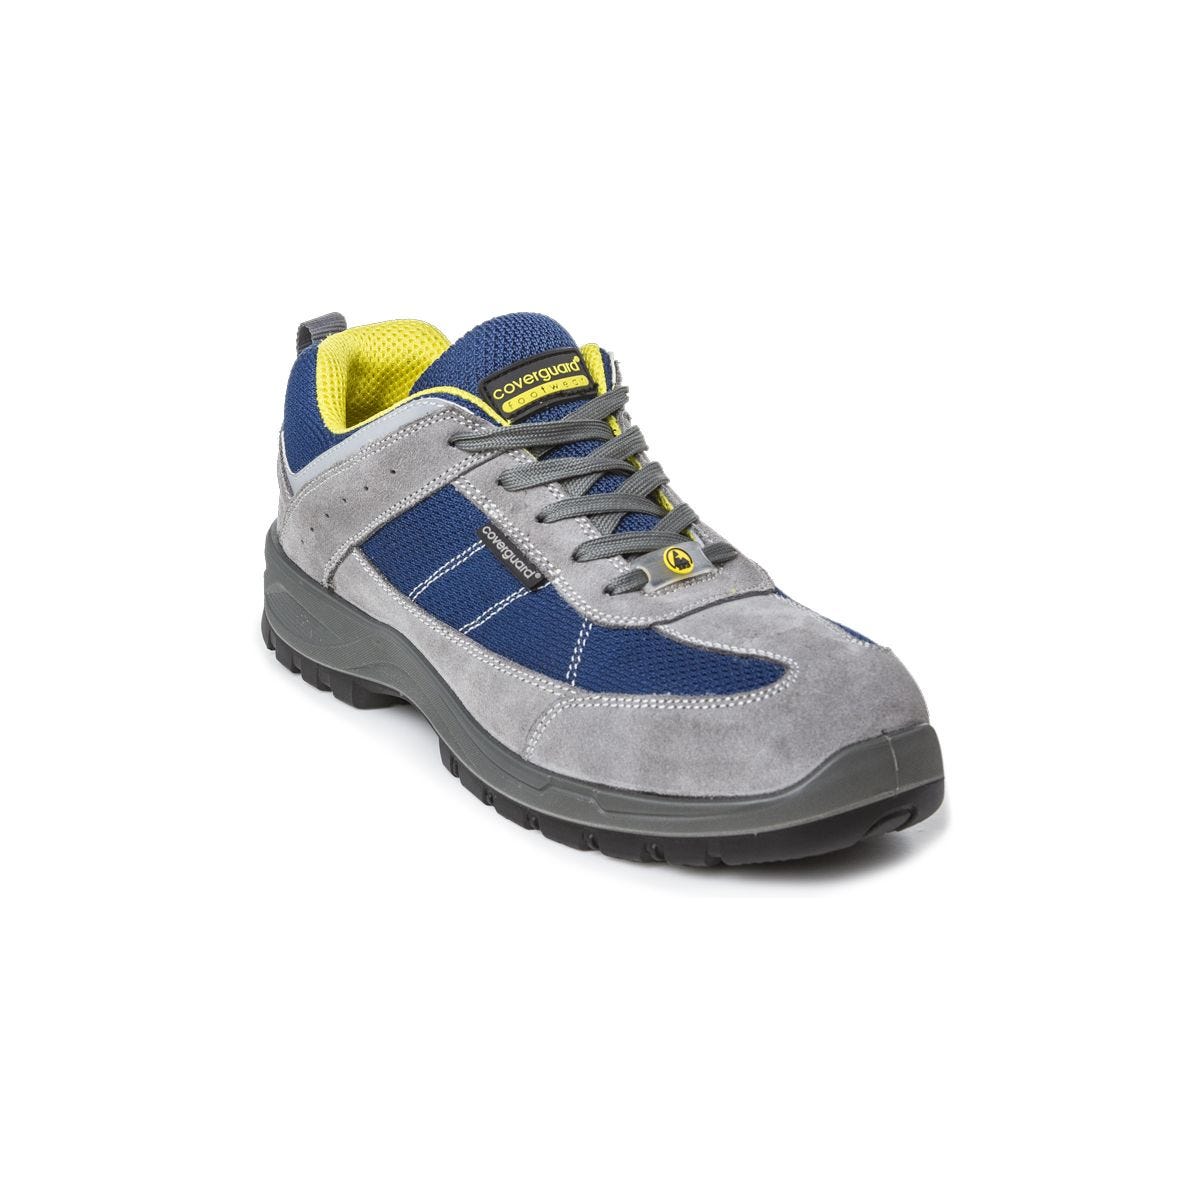 Chaussures de sécurité LEAD S1P SRC basses bleu gris - COVERGUARD - Taille 45 0